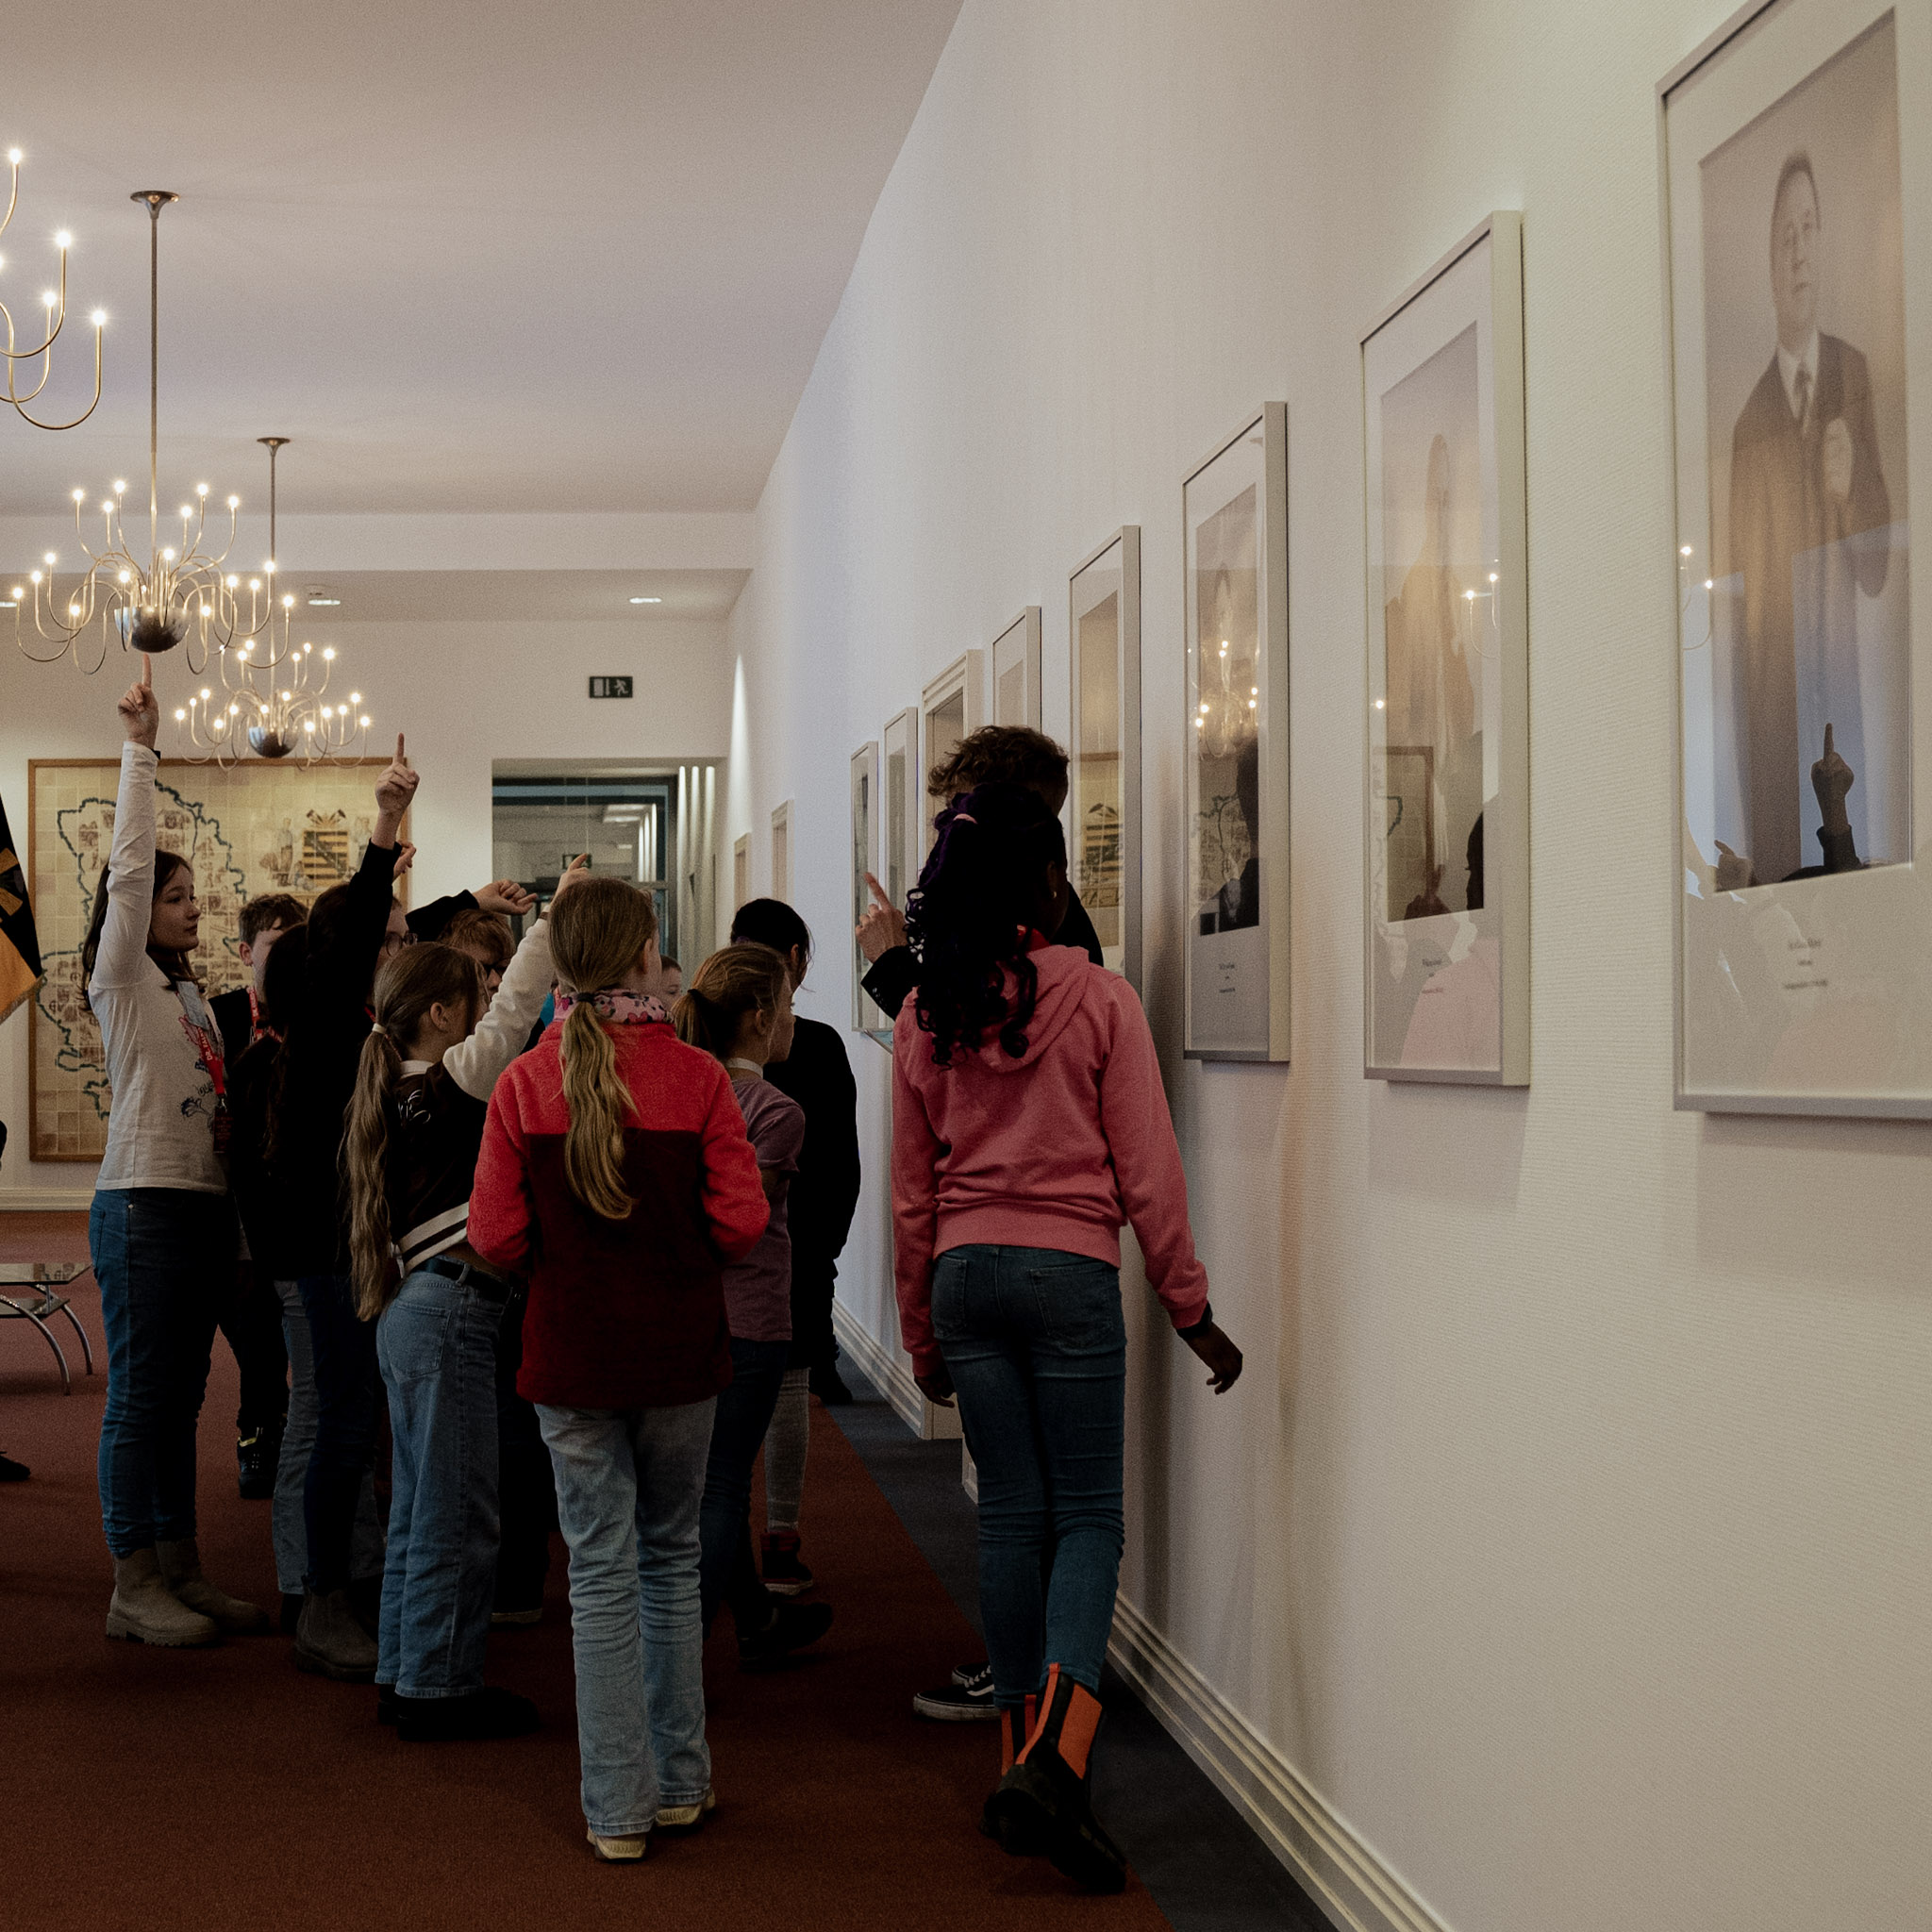 Kinder betrachten die Bilder der bisherigen Landtagspräsidenten im Landtag von Sachsen-Anhalt